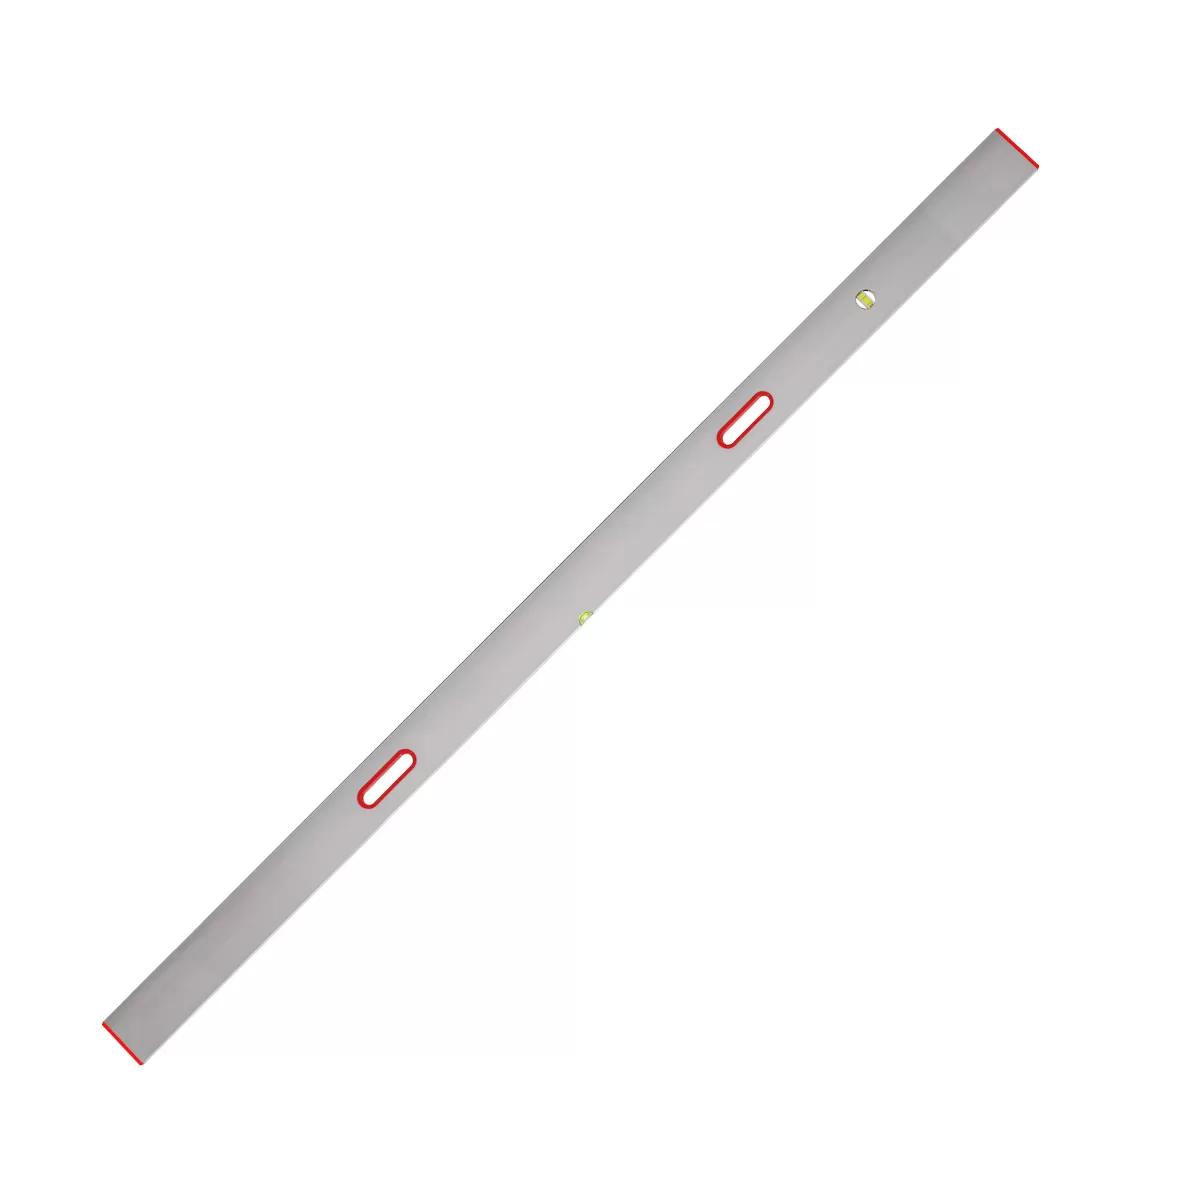 New type aluminium bar 2 axis, 10 ft / 3m 